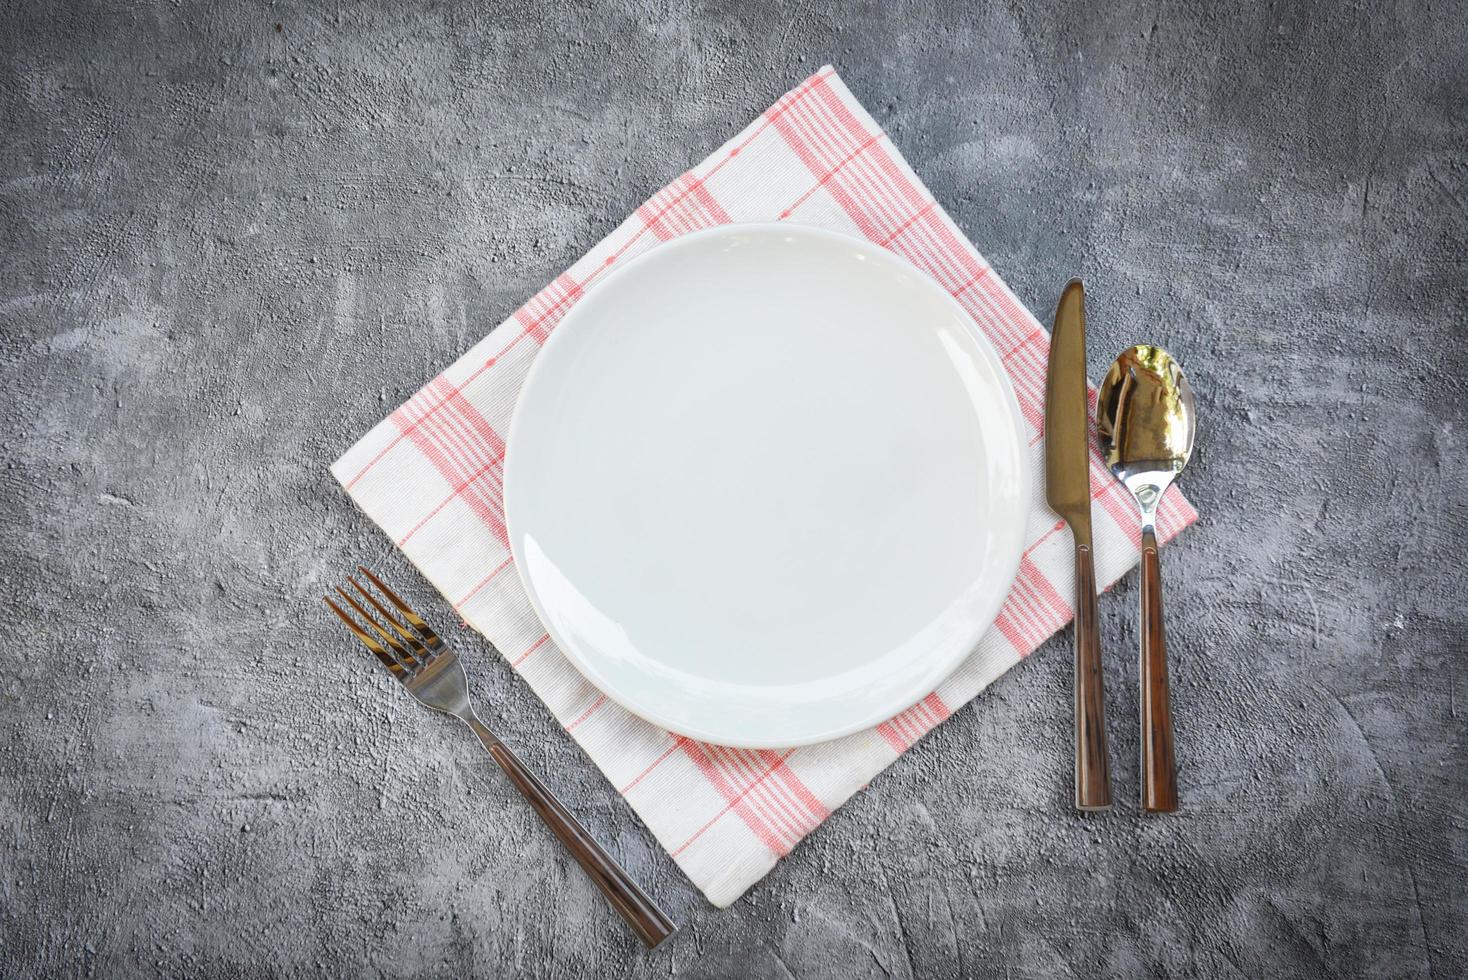 plats miljö tabell mat med uppsättning av vit tallrik på tabell torkdukar eller servett på de middag tömma tallrik sked gaffel och kniv på tabell foto